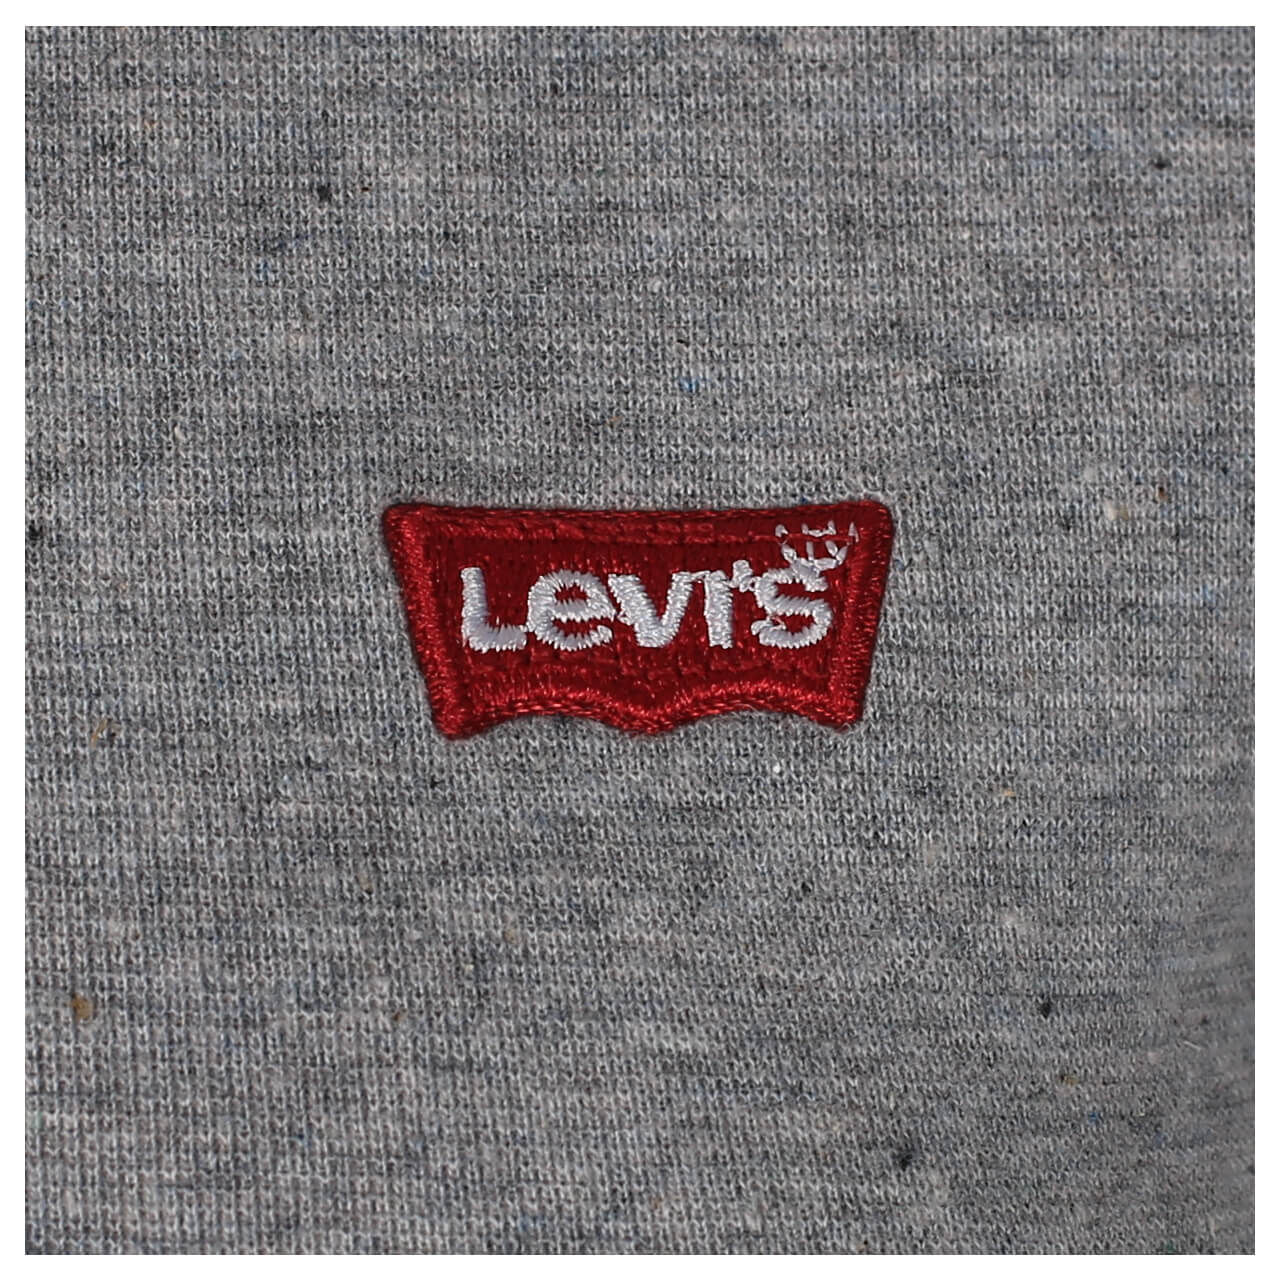 Levis T-Shirts im Doppelpack für Damen in Weiß/Grau, FarbNr.: 0011